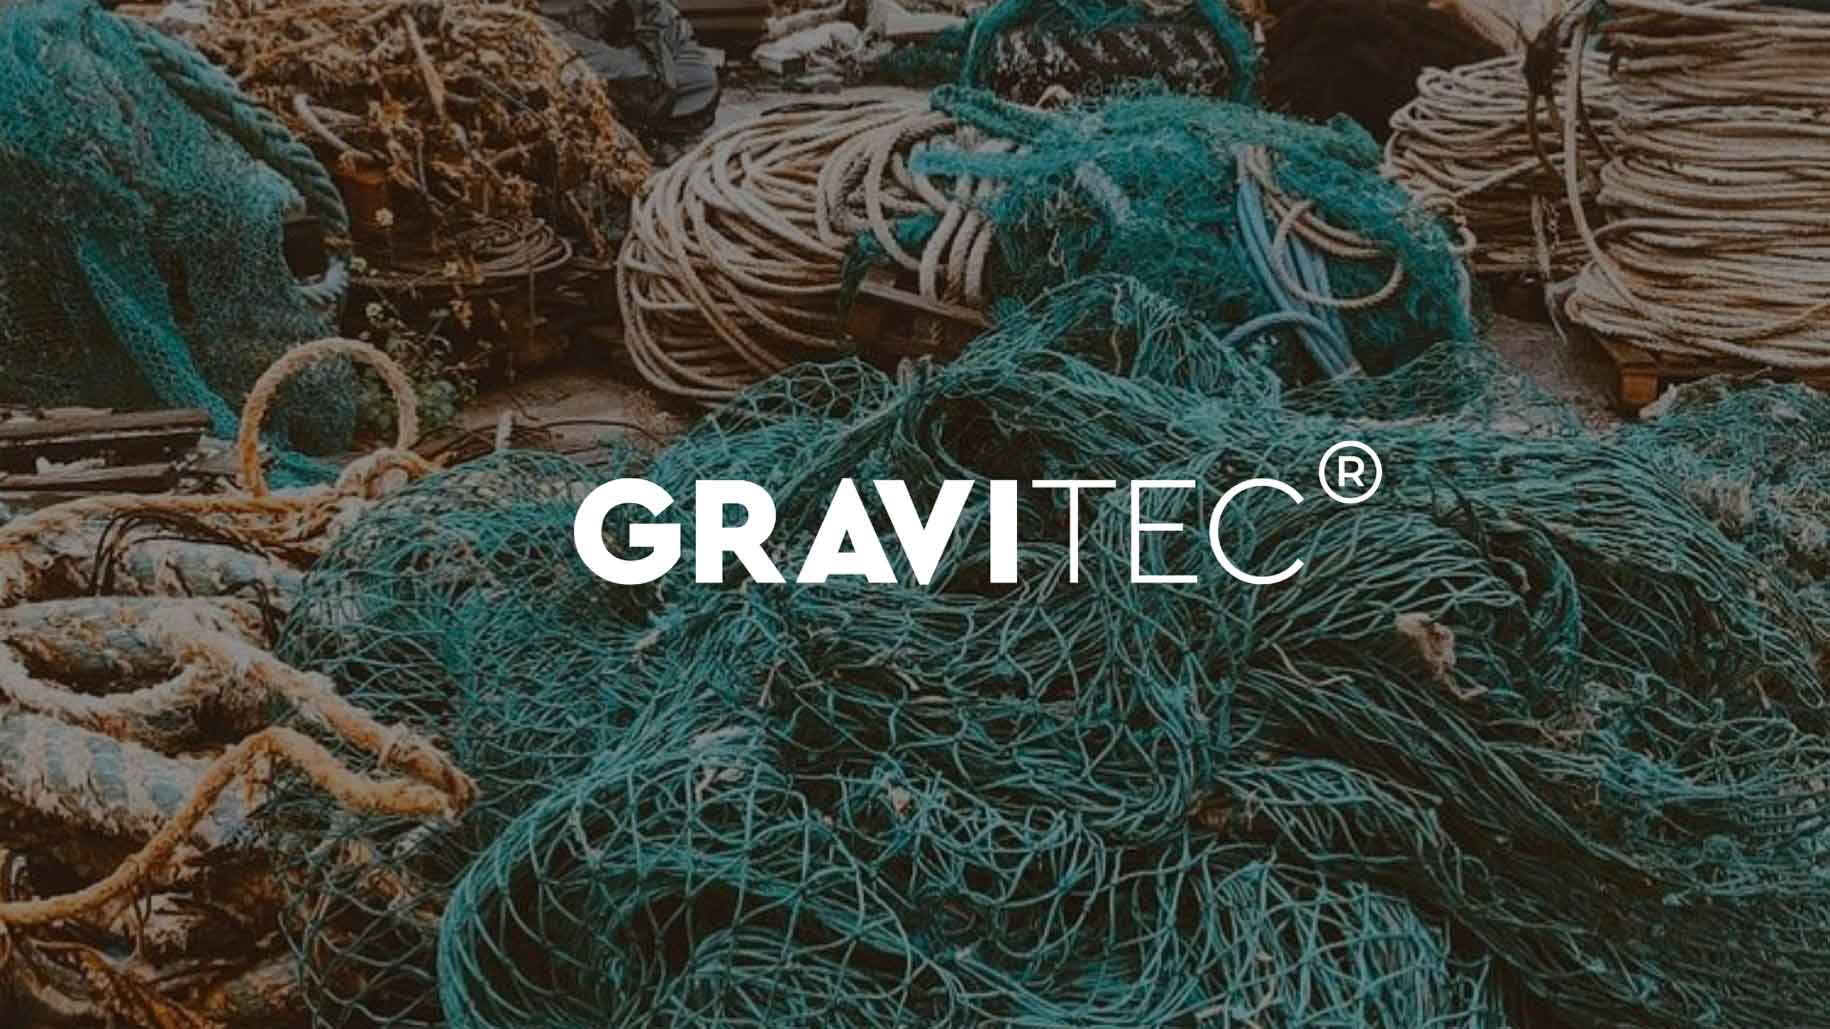 Gravitec: materiales con propósito que salen del océano para redefinir la forma de construir, amueblar y diseñar